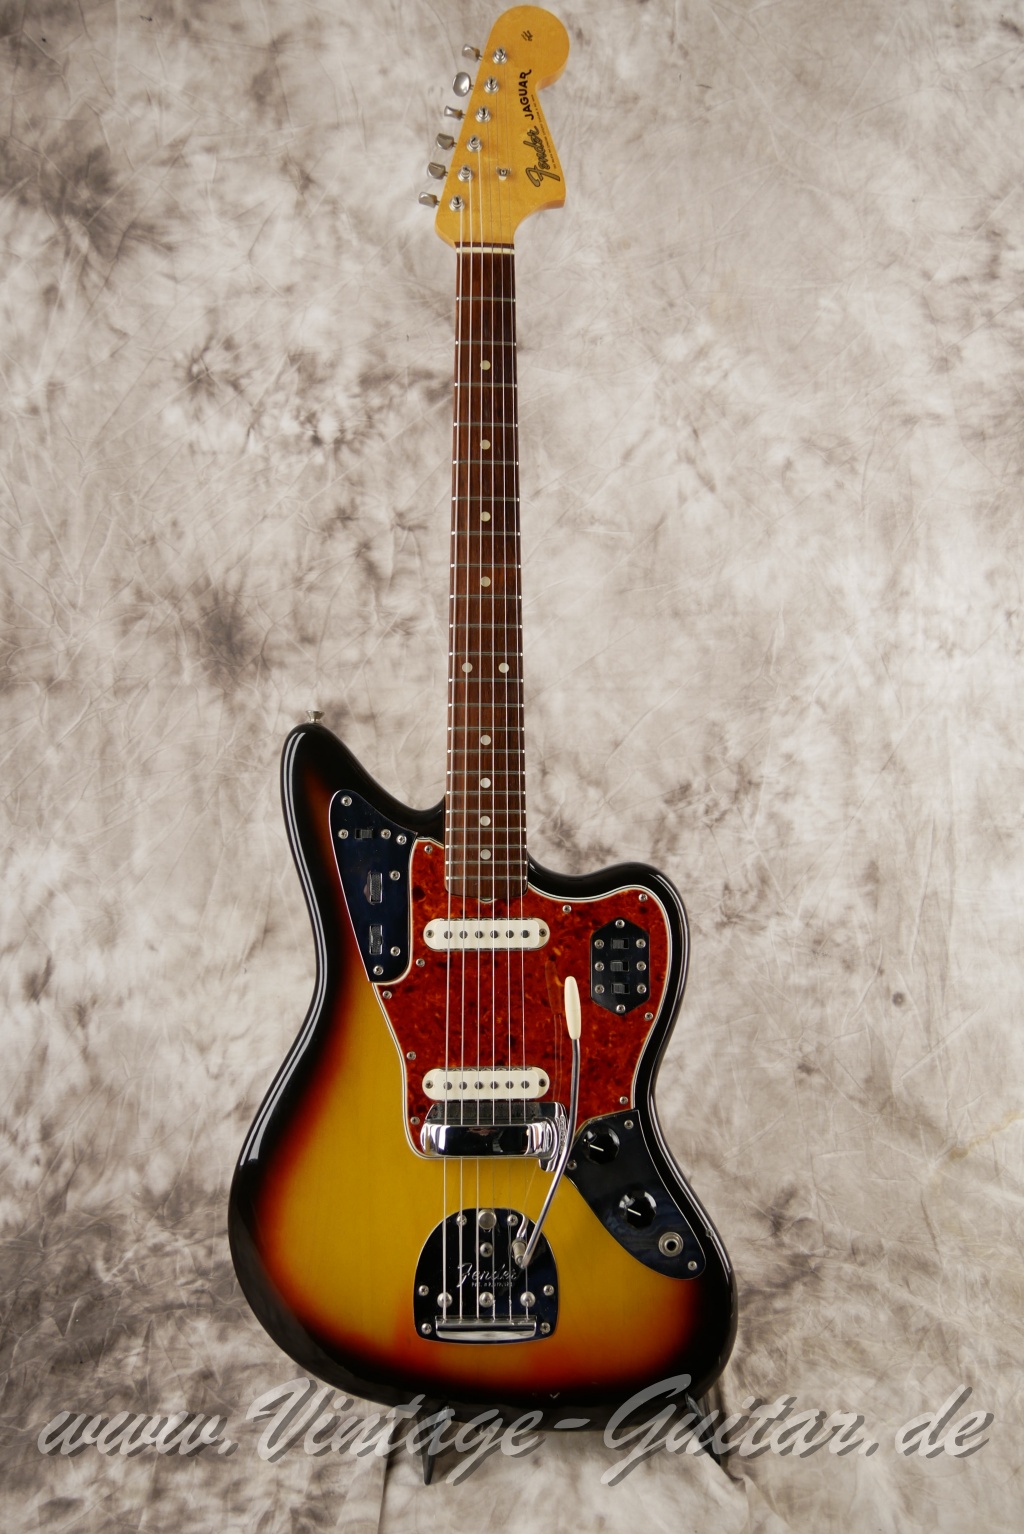 Fender_Jaguar_sunburst_1965_brown_case-001.JPG